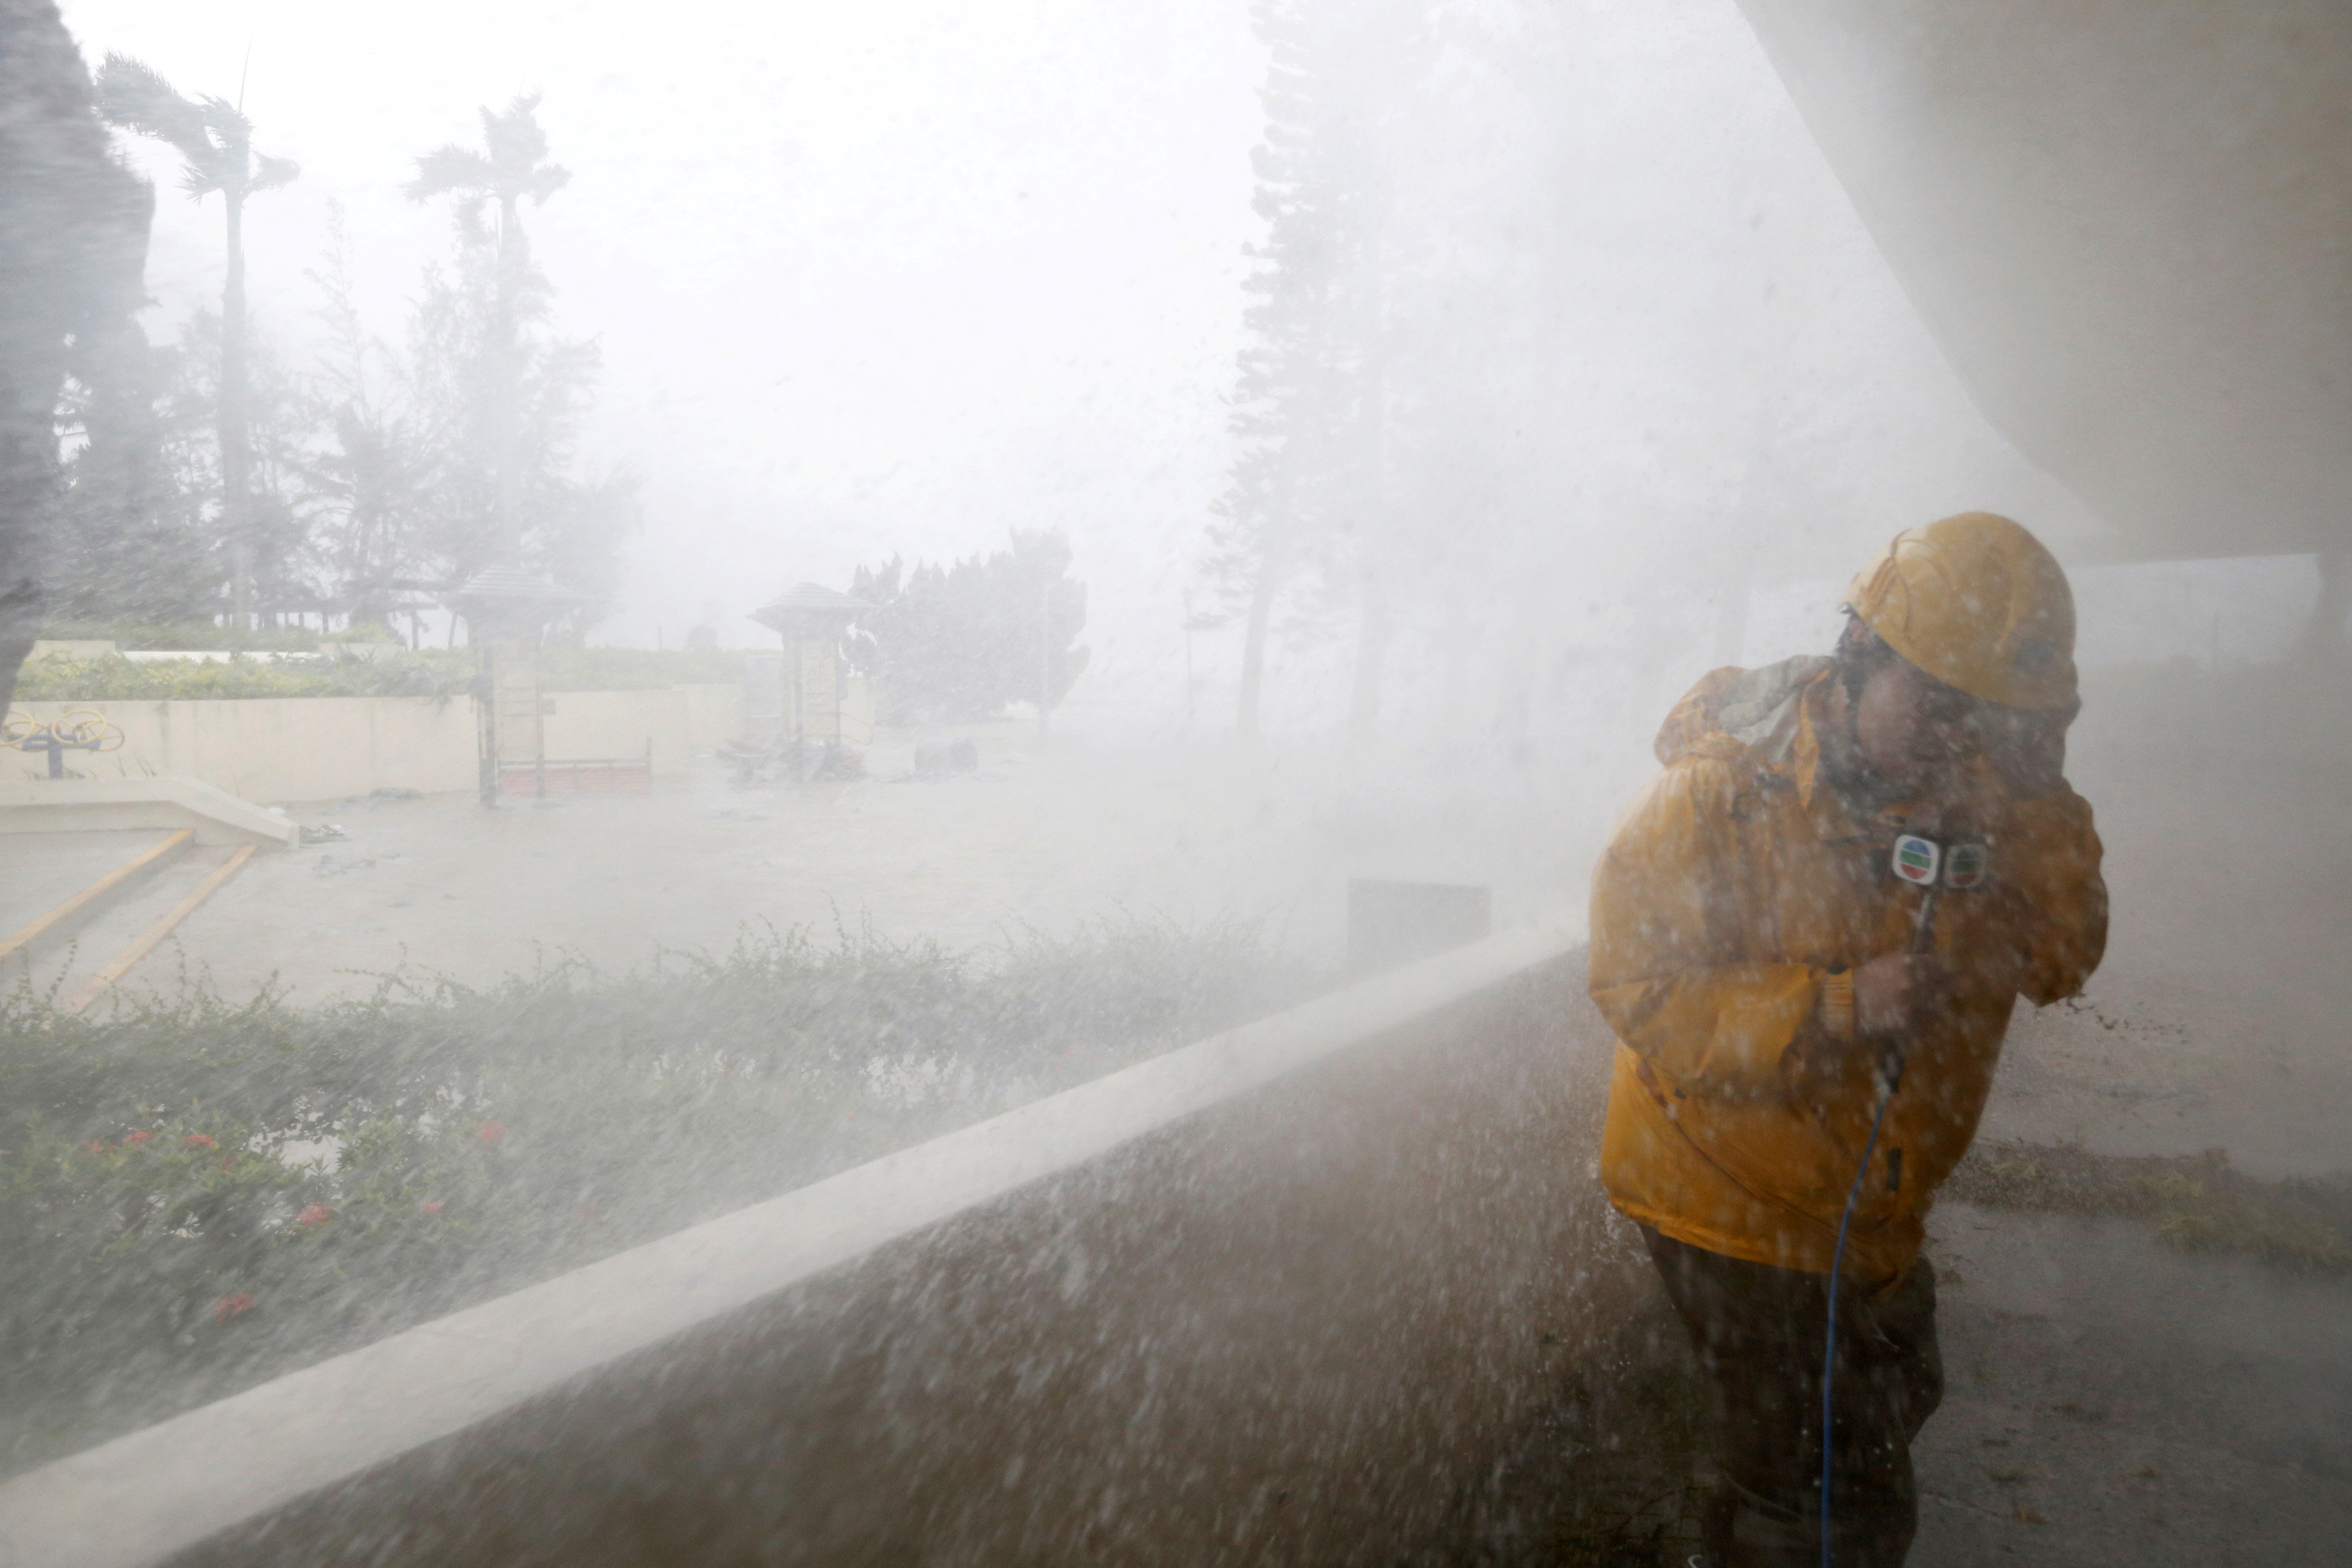 أحد رجال الإنقاذ يحاول إنقاذ نفسه من جراء الإعصار